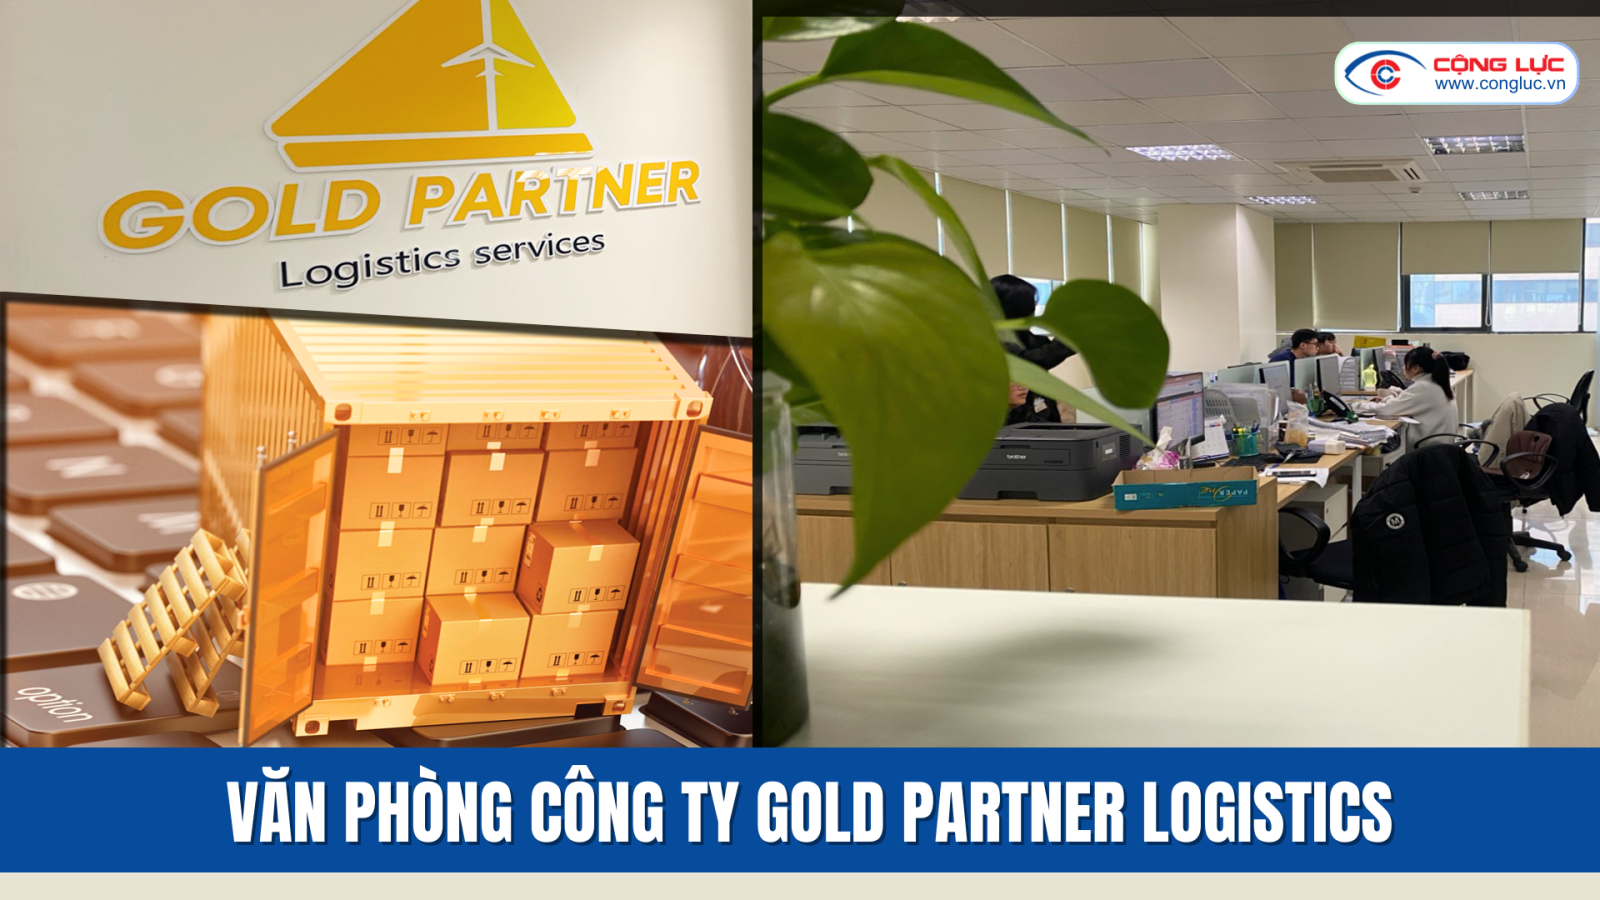 Cộng Lực đối tác vàng của Công ty Gold Partner Logistics tại toà nhà thành đạt 1